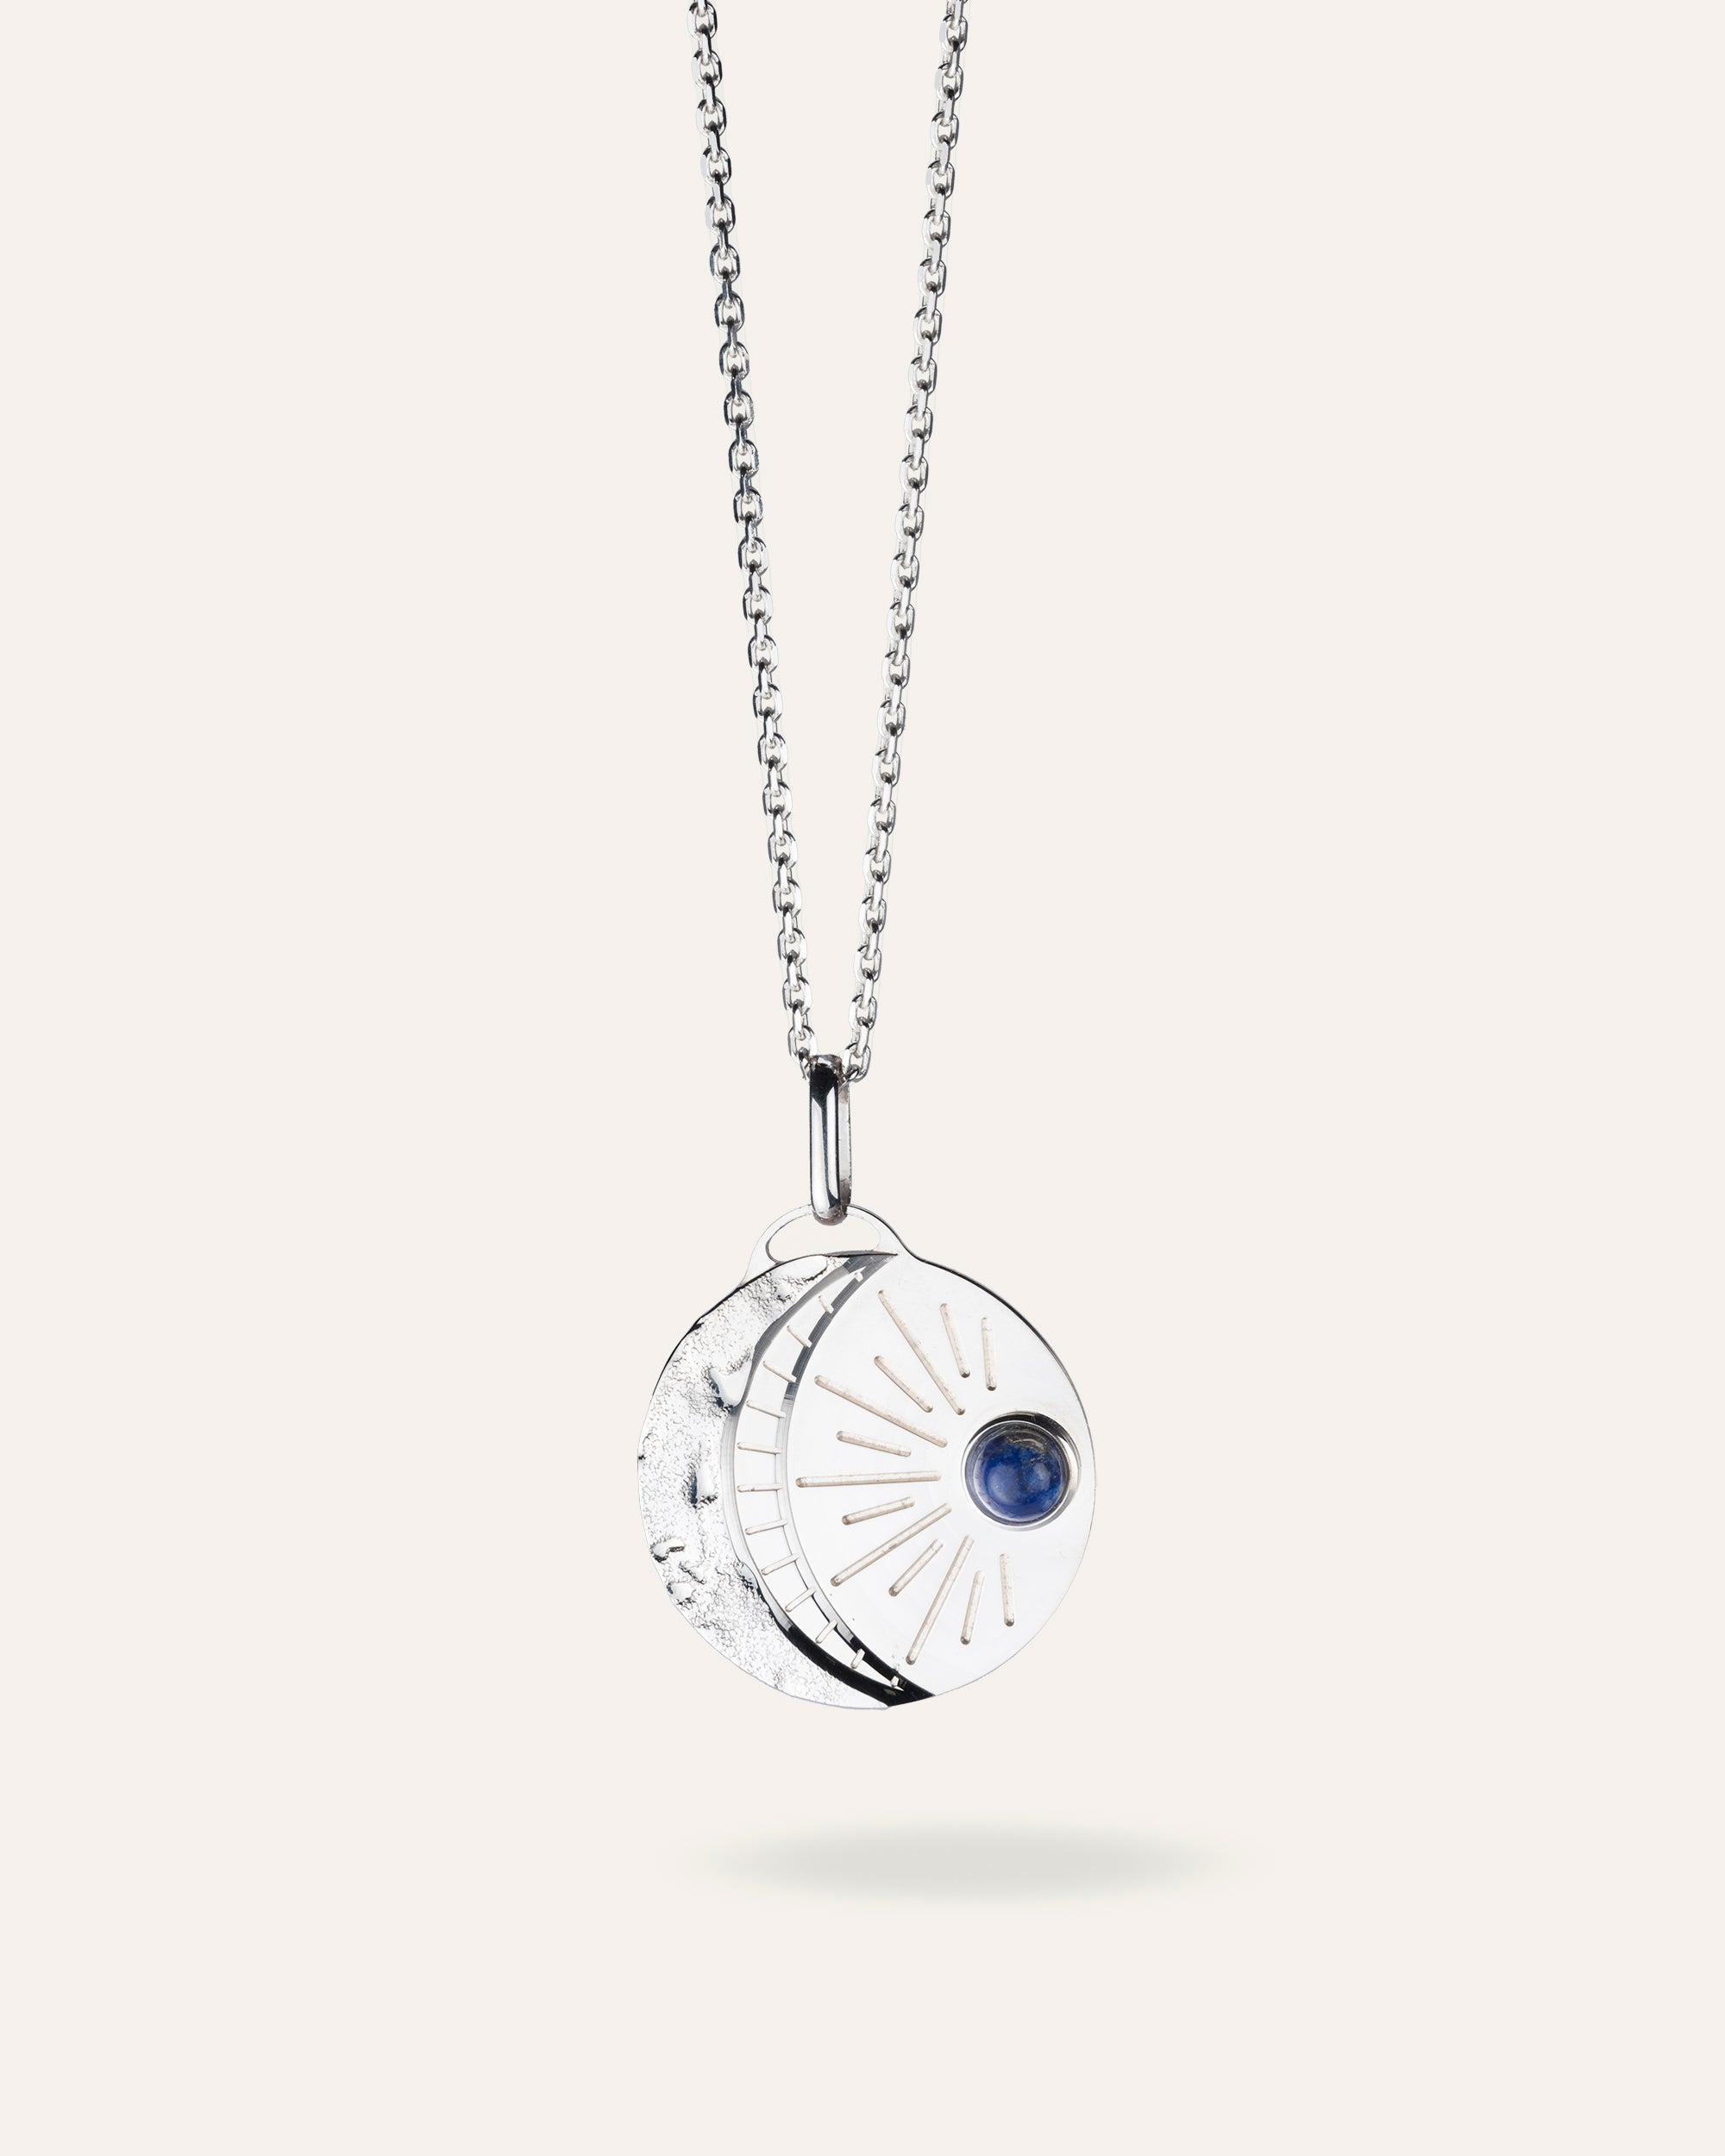 Collier en argent massif 925, chaîne forçat et médaille composée d'un croissant de lune martelé et d'un soleil représenté par une petite pierre ronde de Lapis Lazuli, laissant briller quelques rayons, made in France.